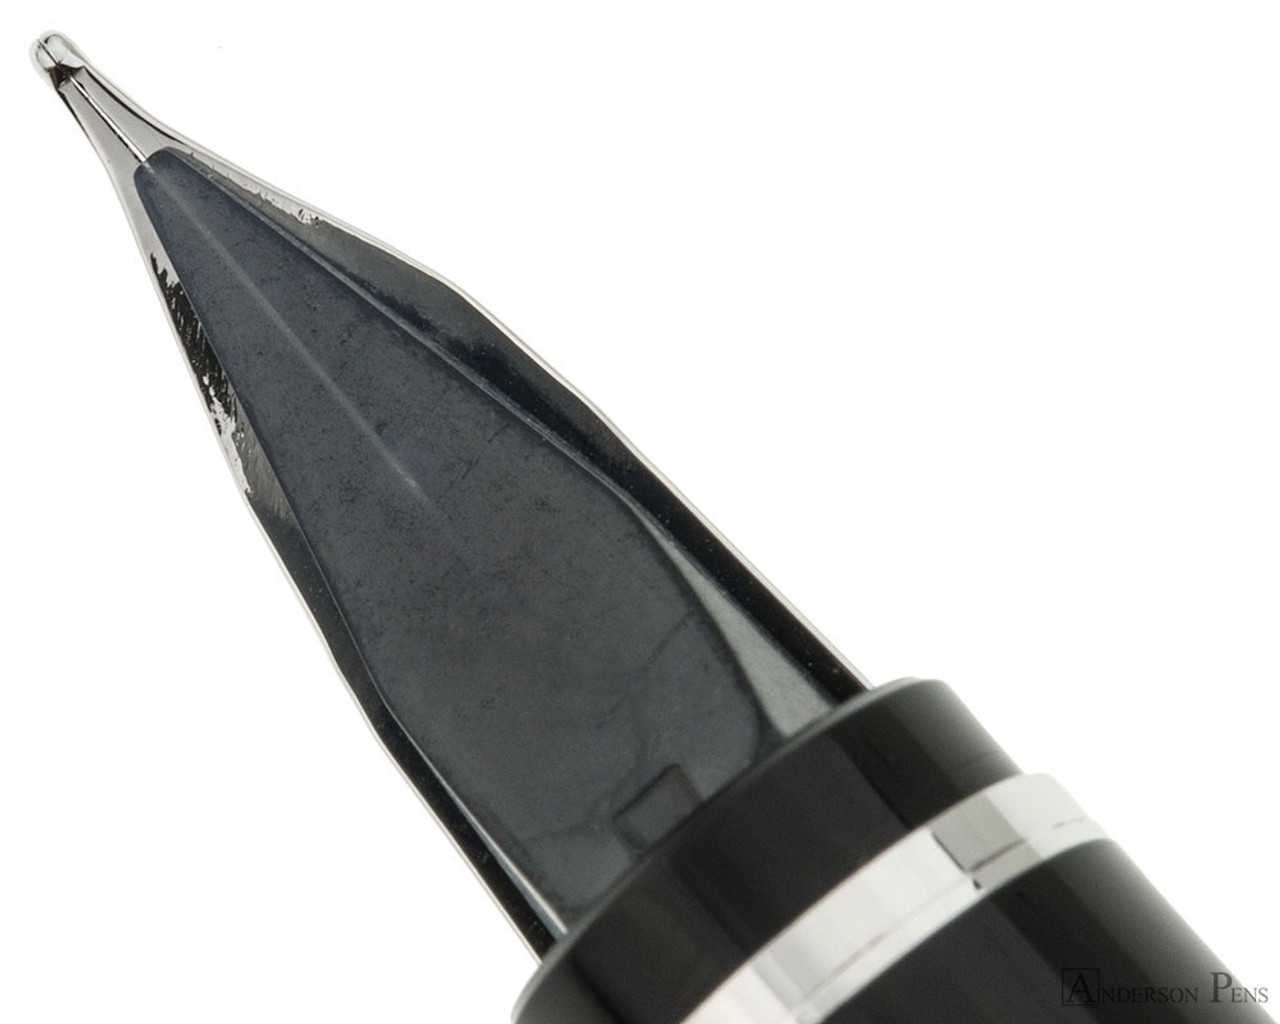 Pilot Falcon - Fountain Pen, Black/Gold / Fine